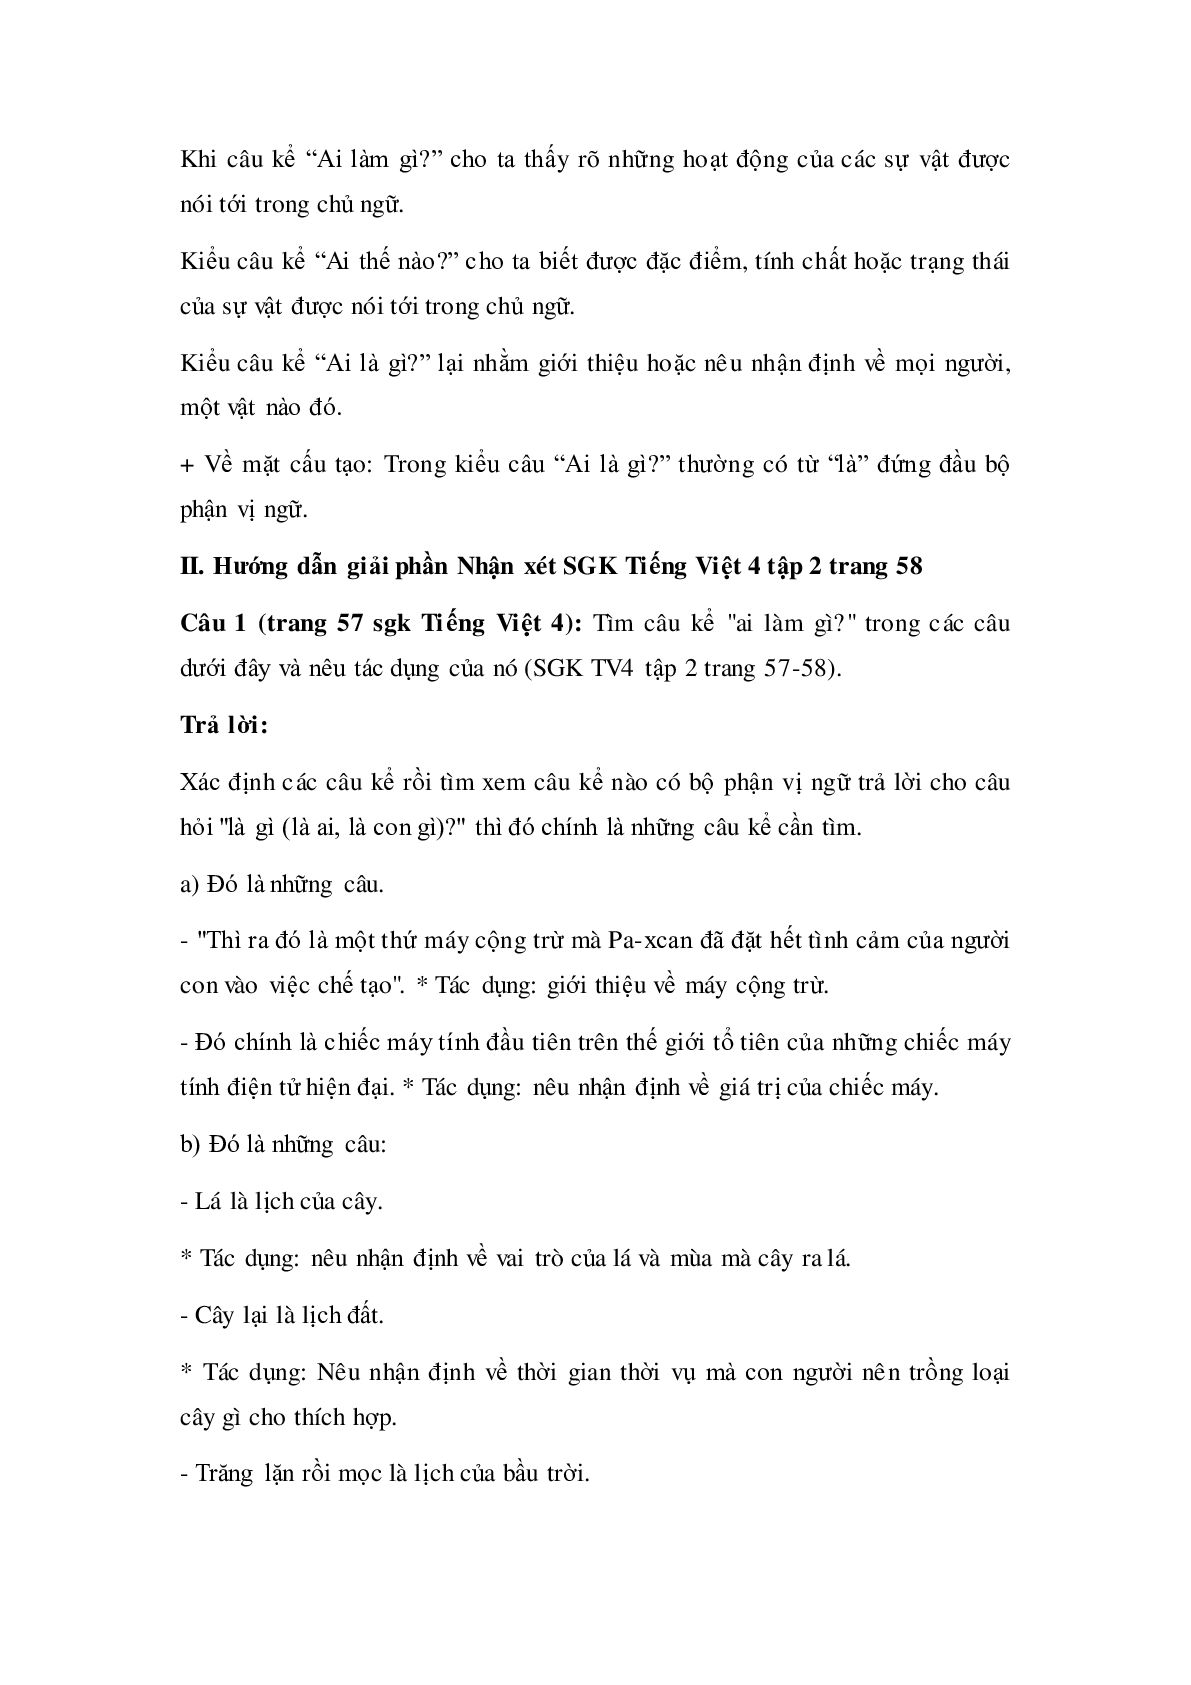 Soạn Tiếng Việt lớp 4: Luyện từ và câu: Câu kể: Ai là gì mới nhất (trang 2)